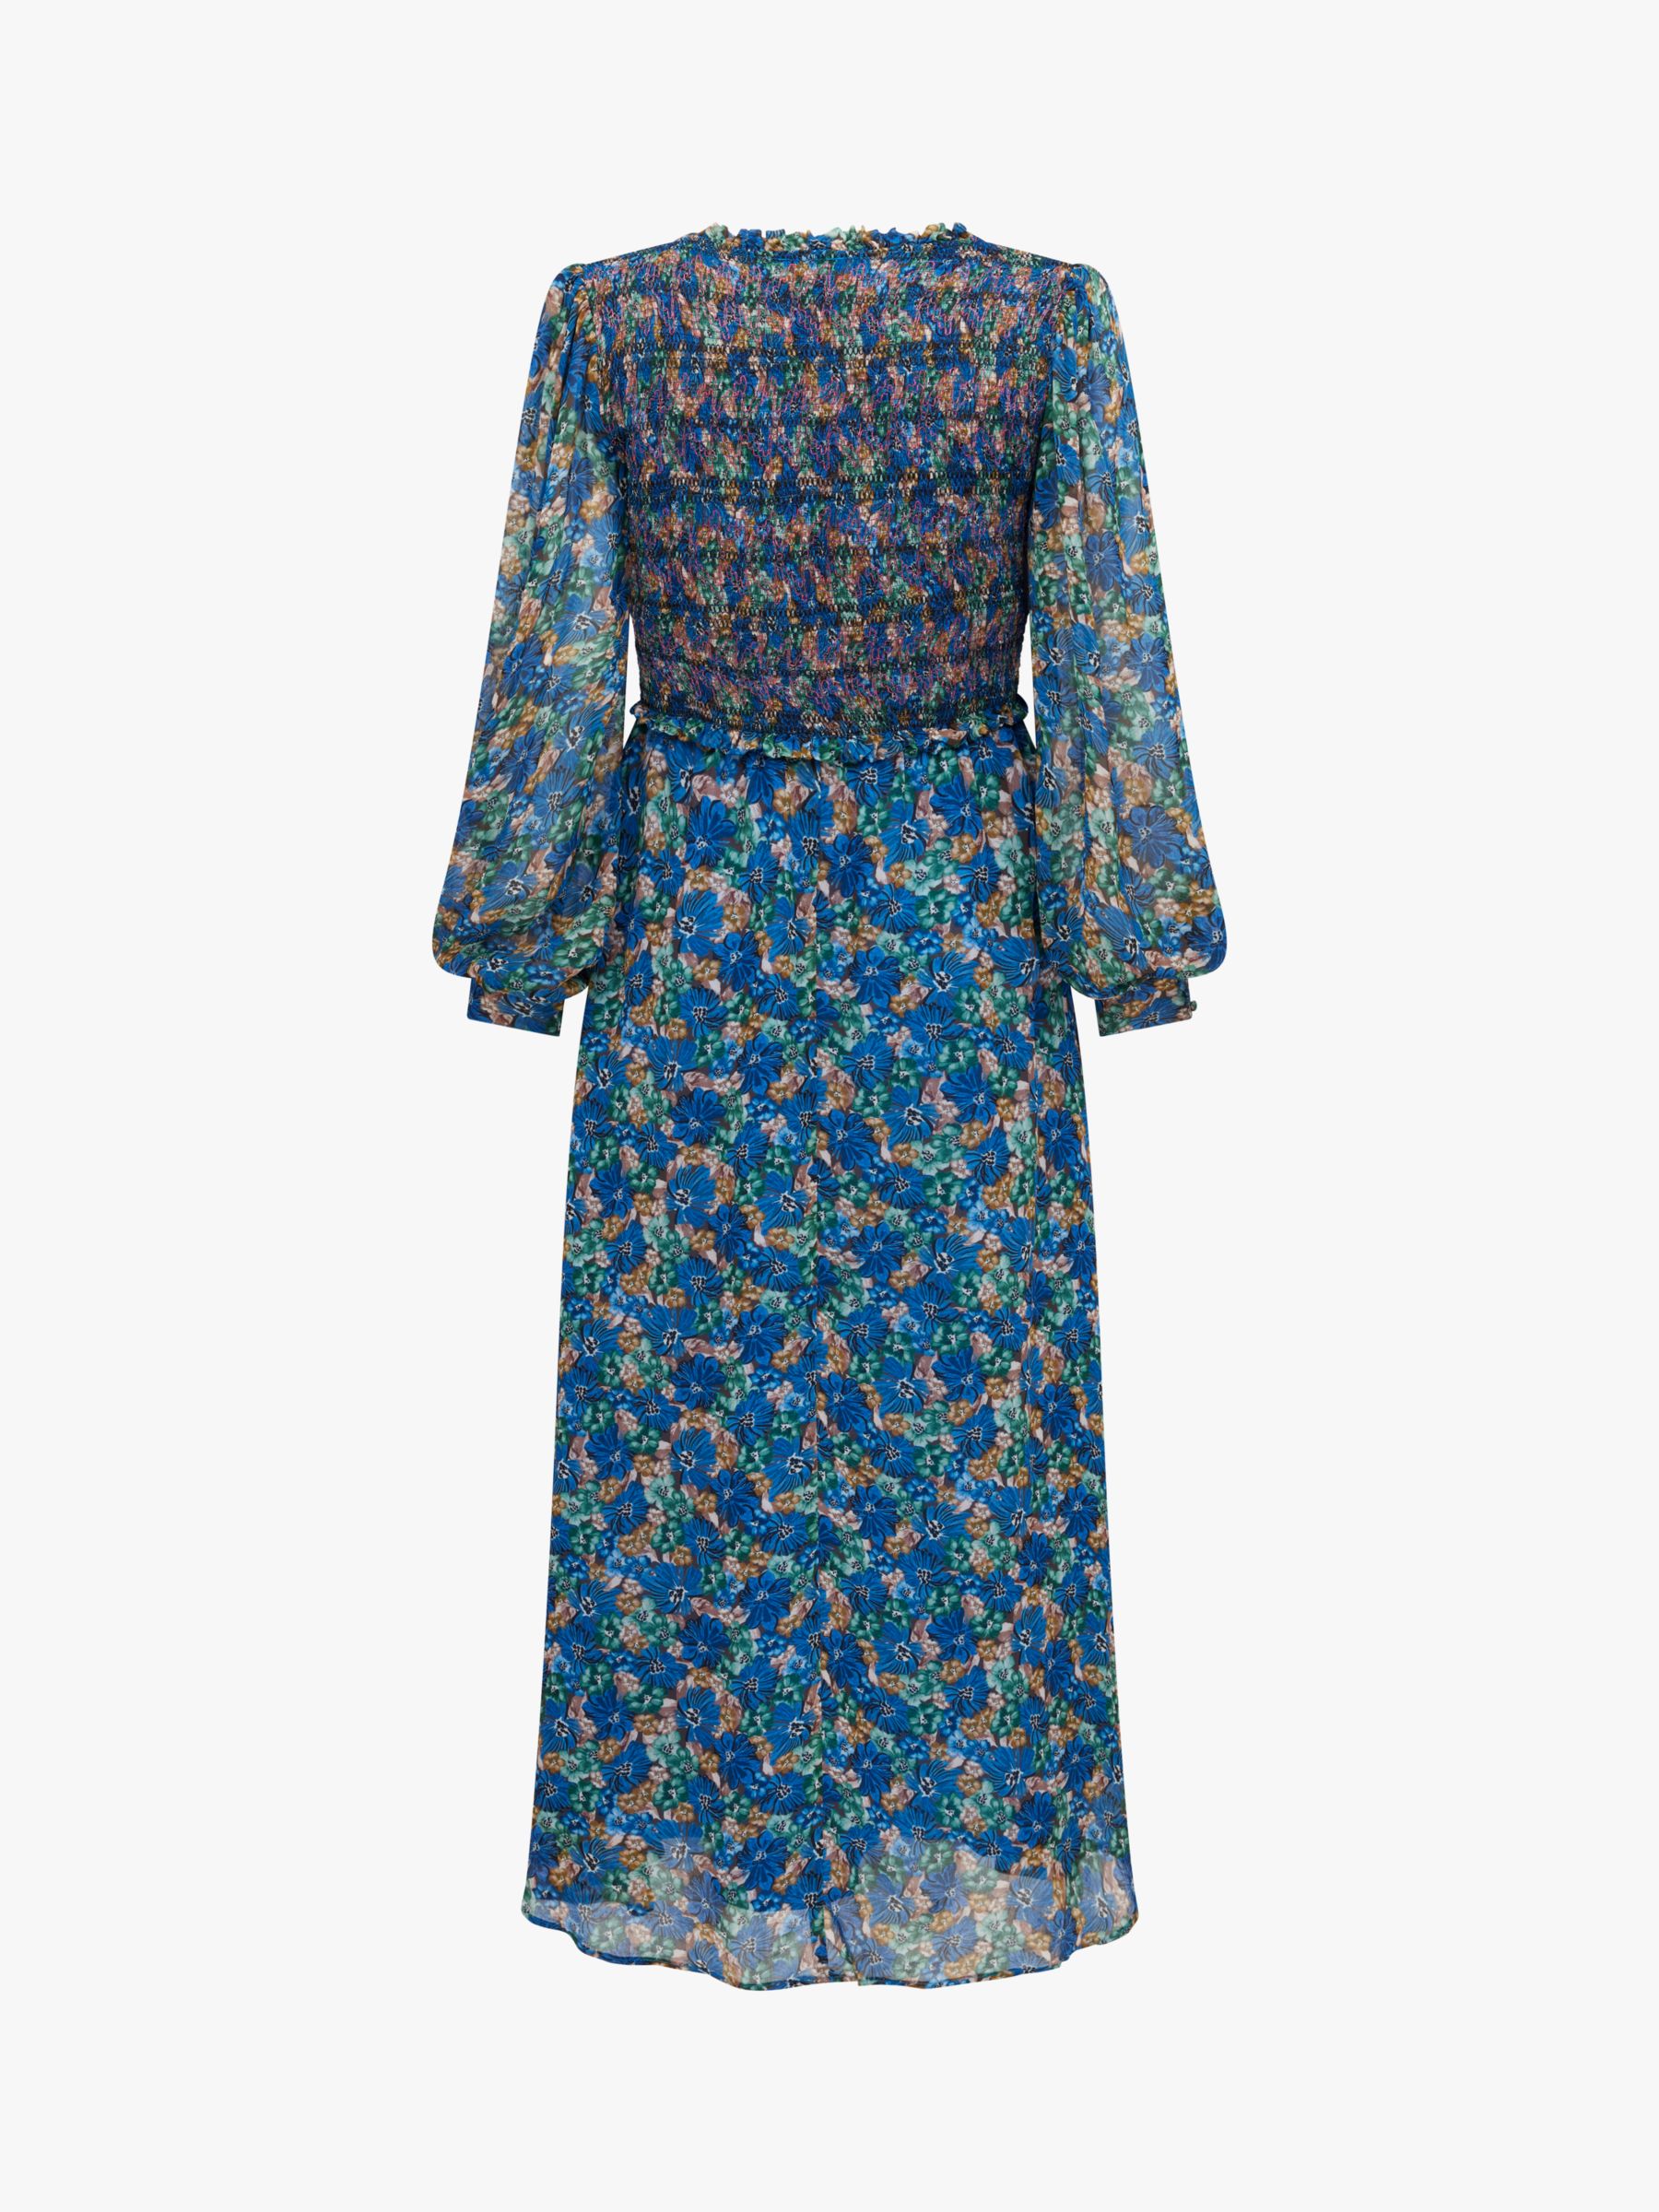 Ghost Emilia Floral Print Shirred Bodice Midi Dress, Blue/Multi, XS